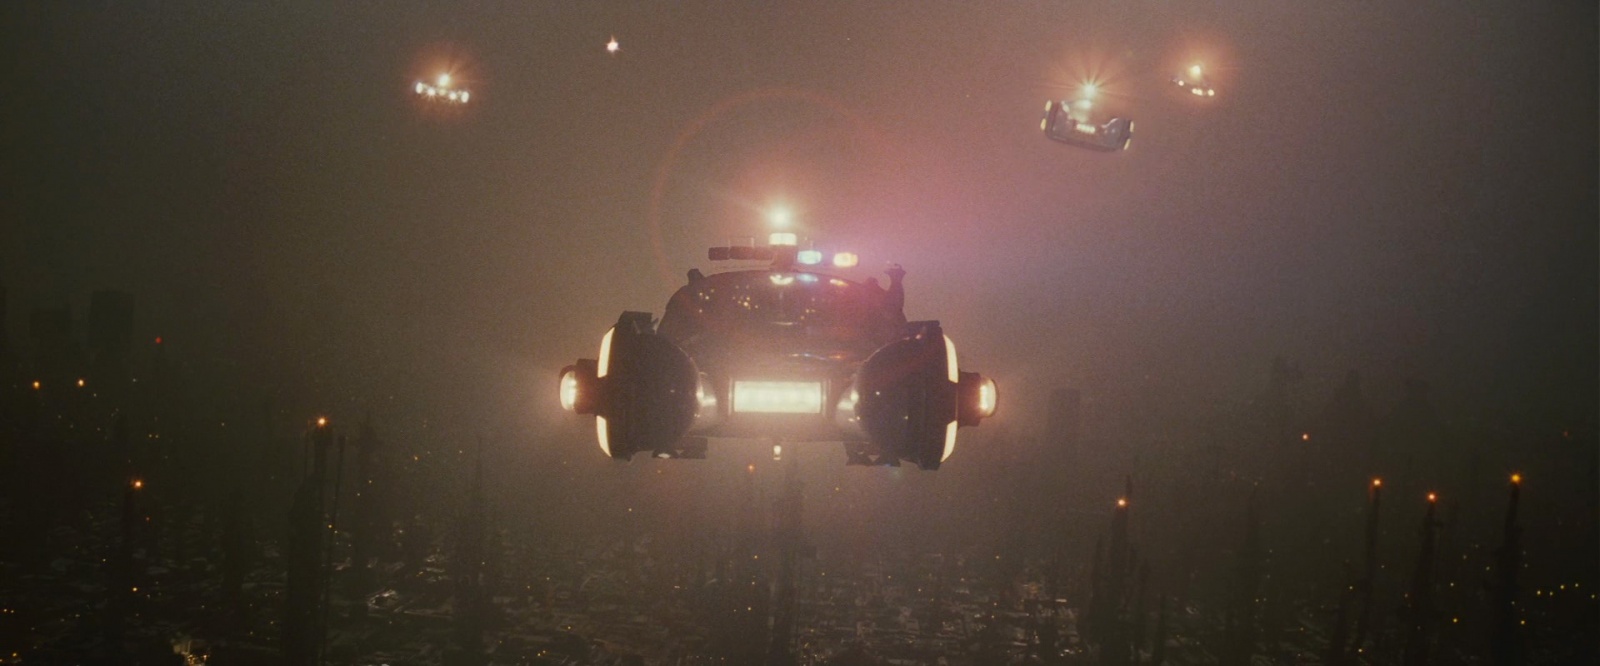 Временная линия Blade Runner — ноябрь 2019 года. Сбылся ли прогноз? - 6